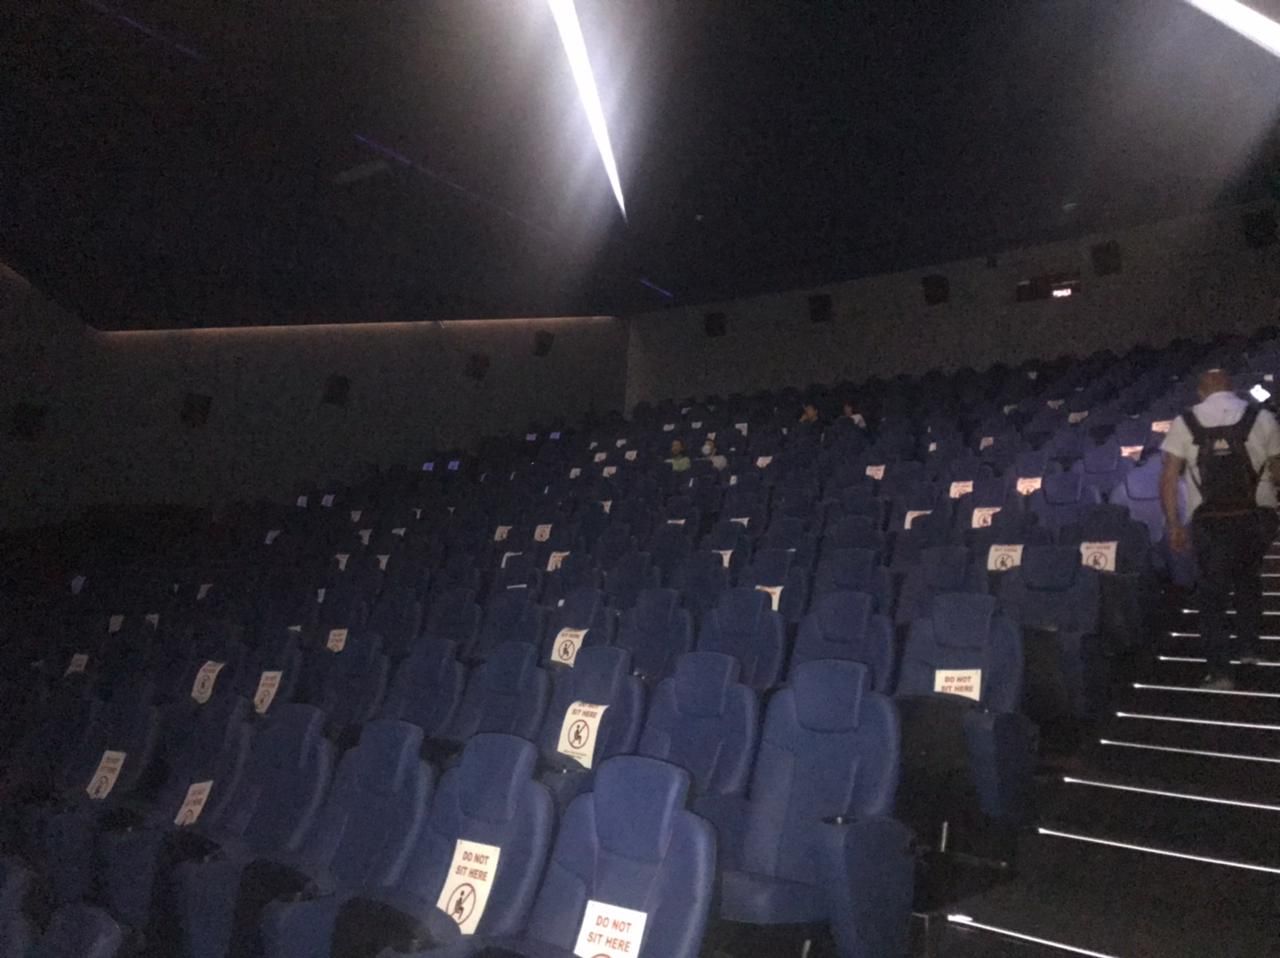 قاعات السينما في لبنان تستعد بالإجراءات الاحترازية لاستقبال الجمهور - الشرق